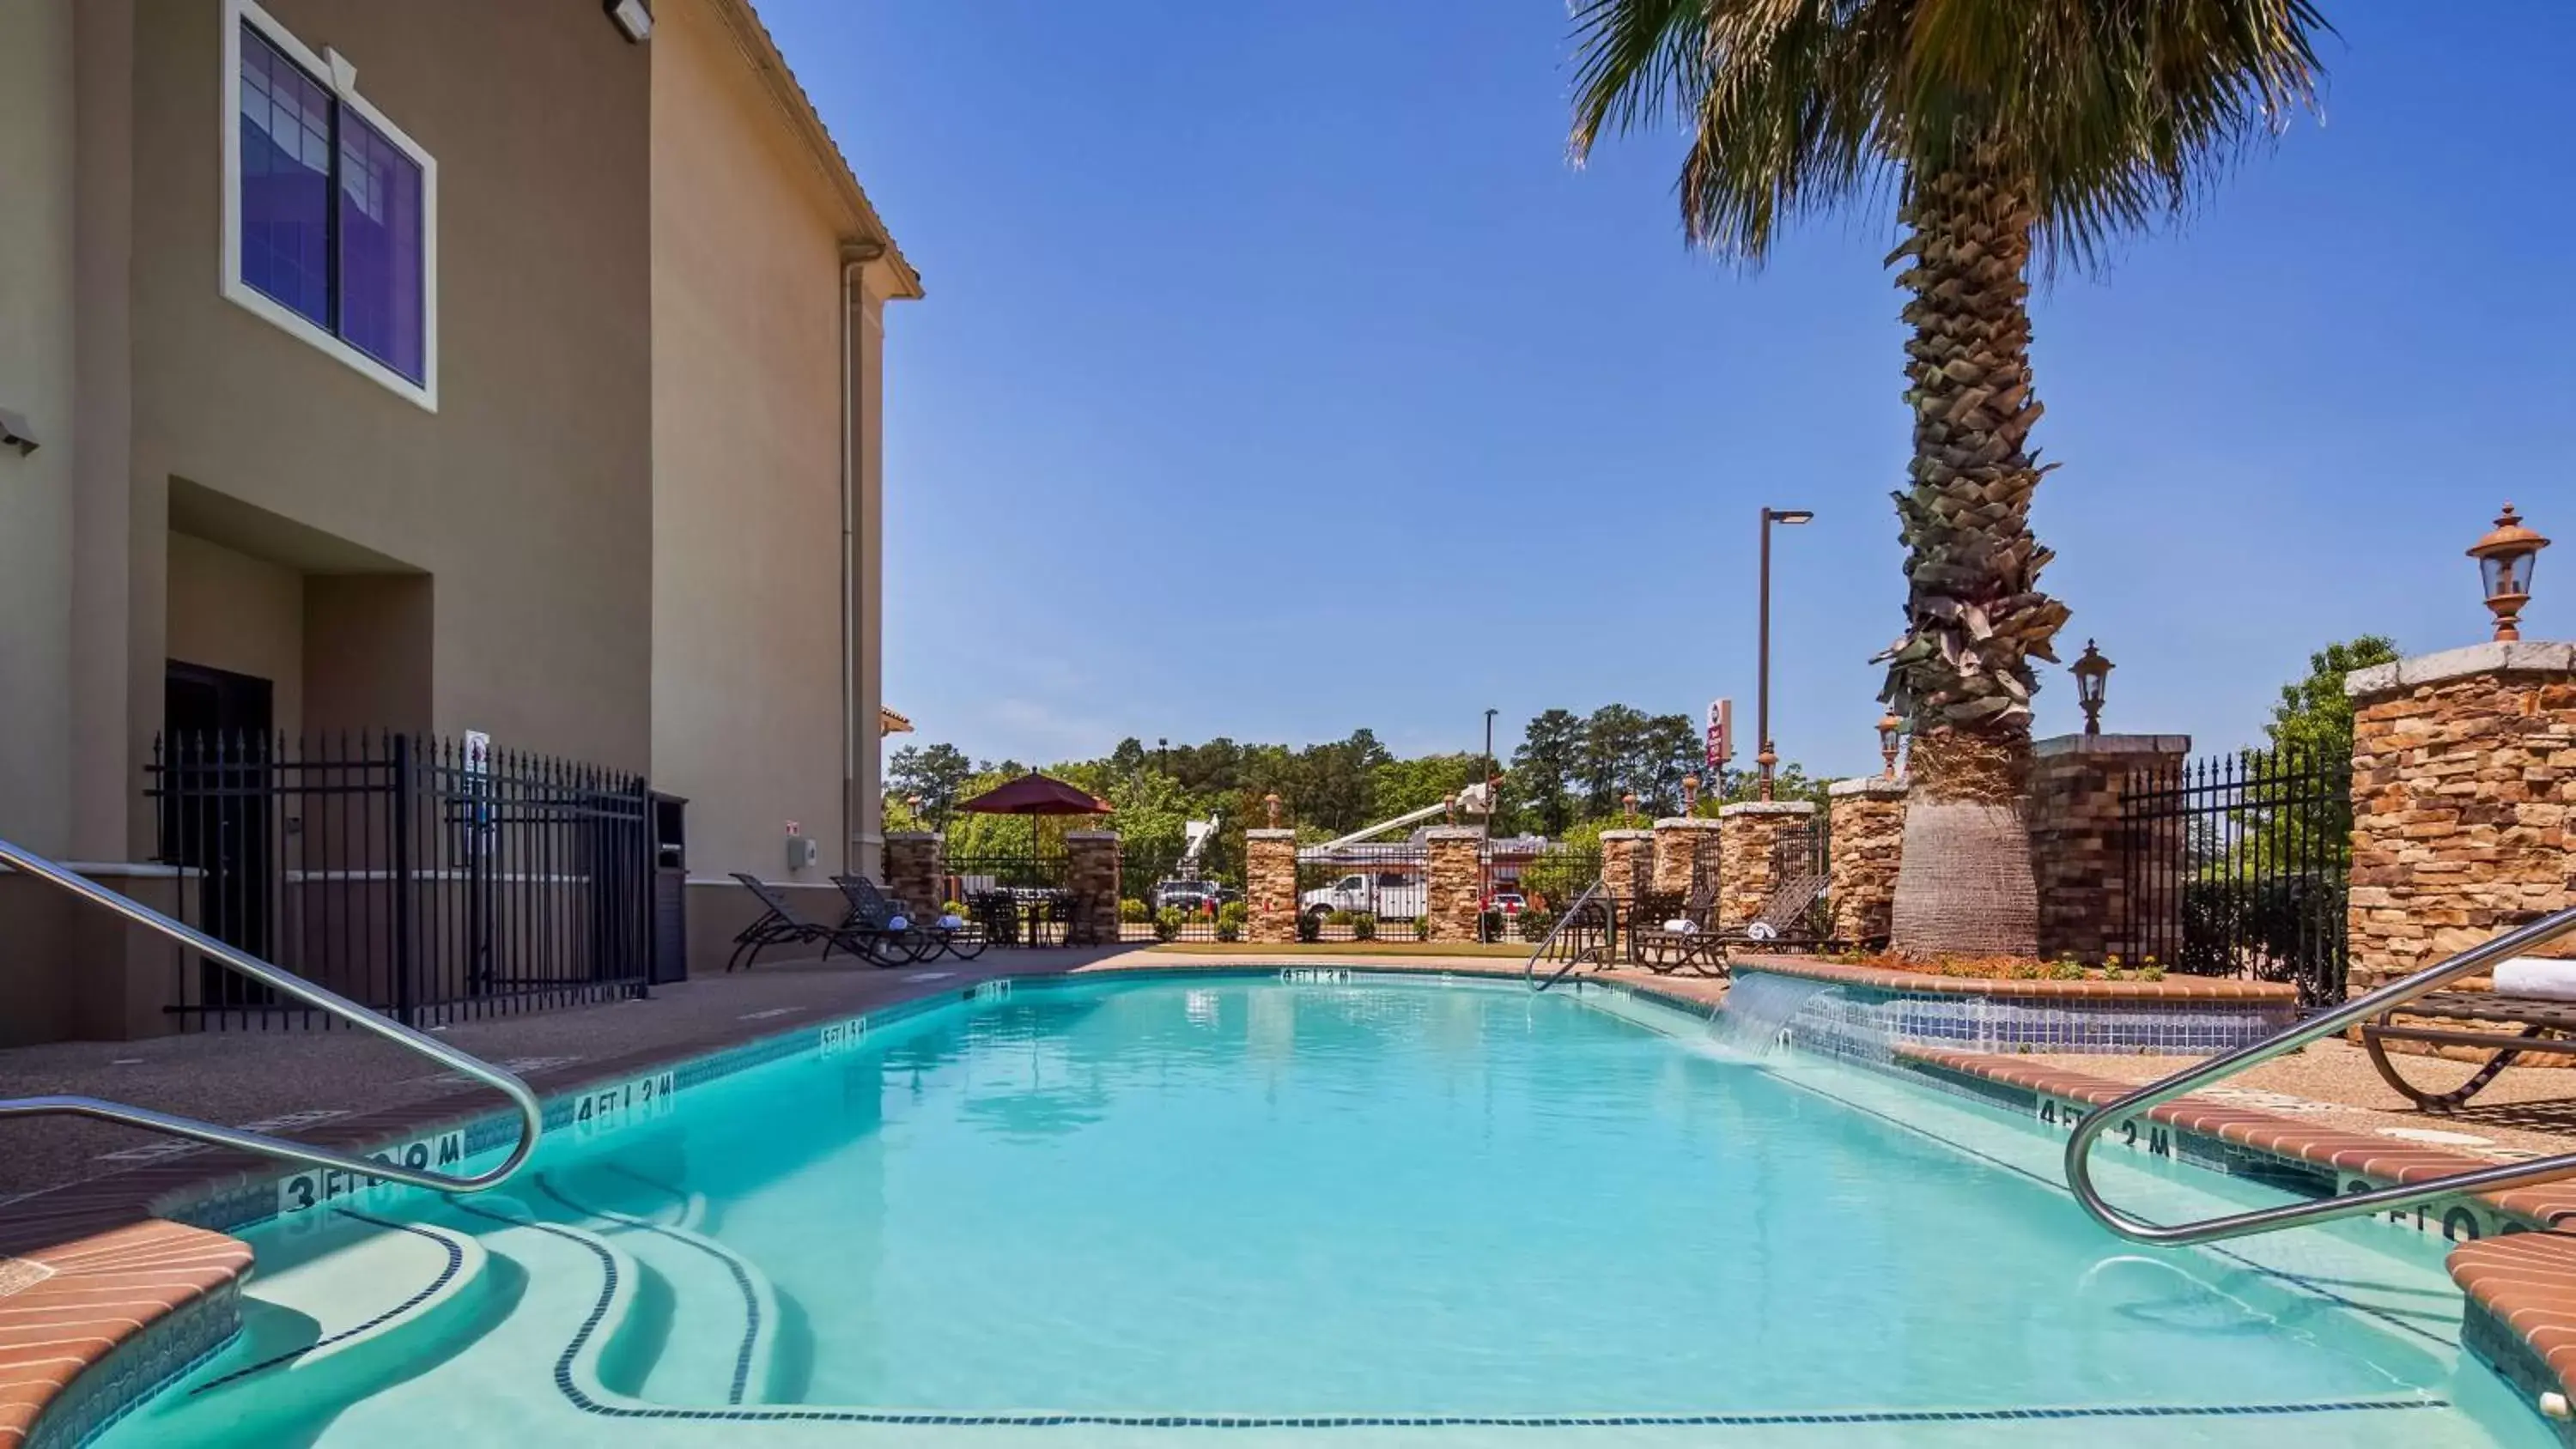 On site, Swimming Pool in Best Western Plus Crown Colony Inn & Suites